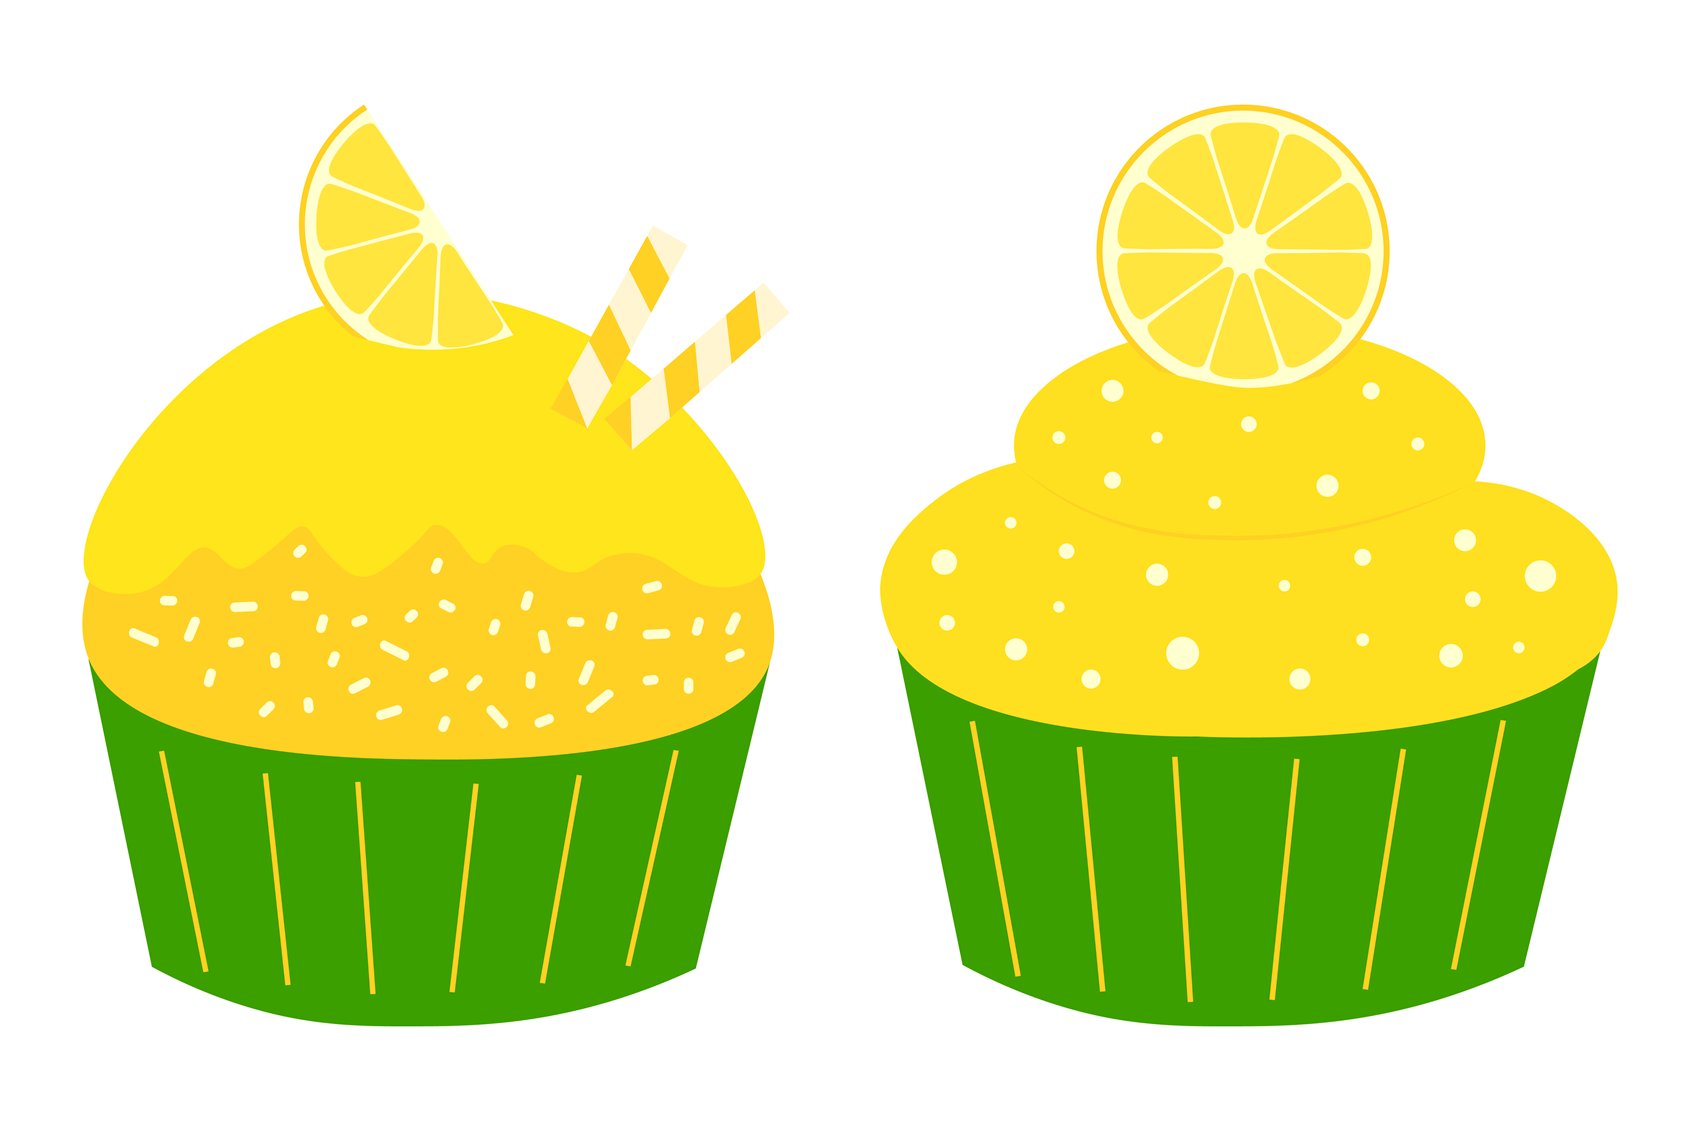 Amazing lemon cakes.